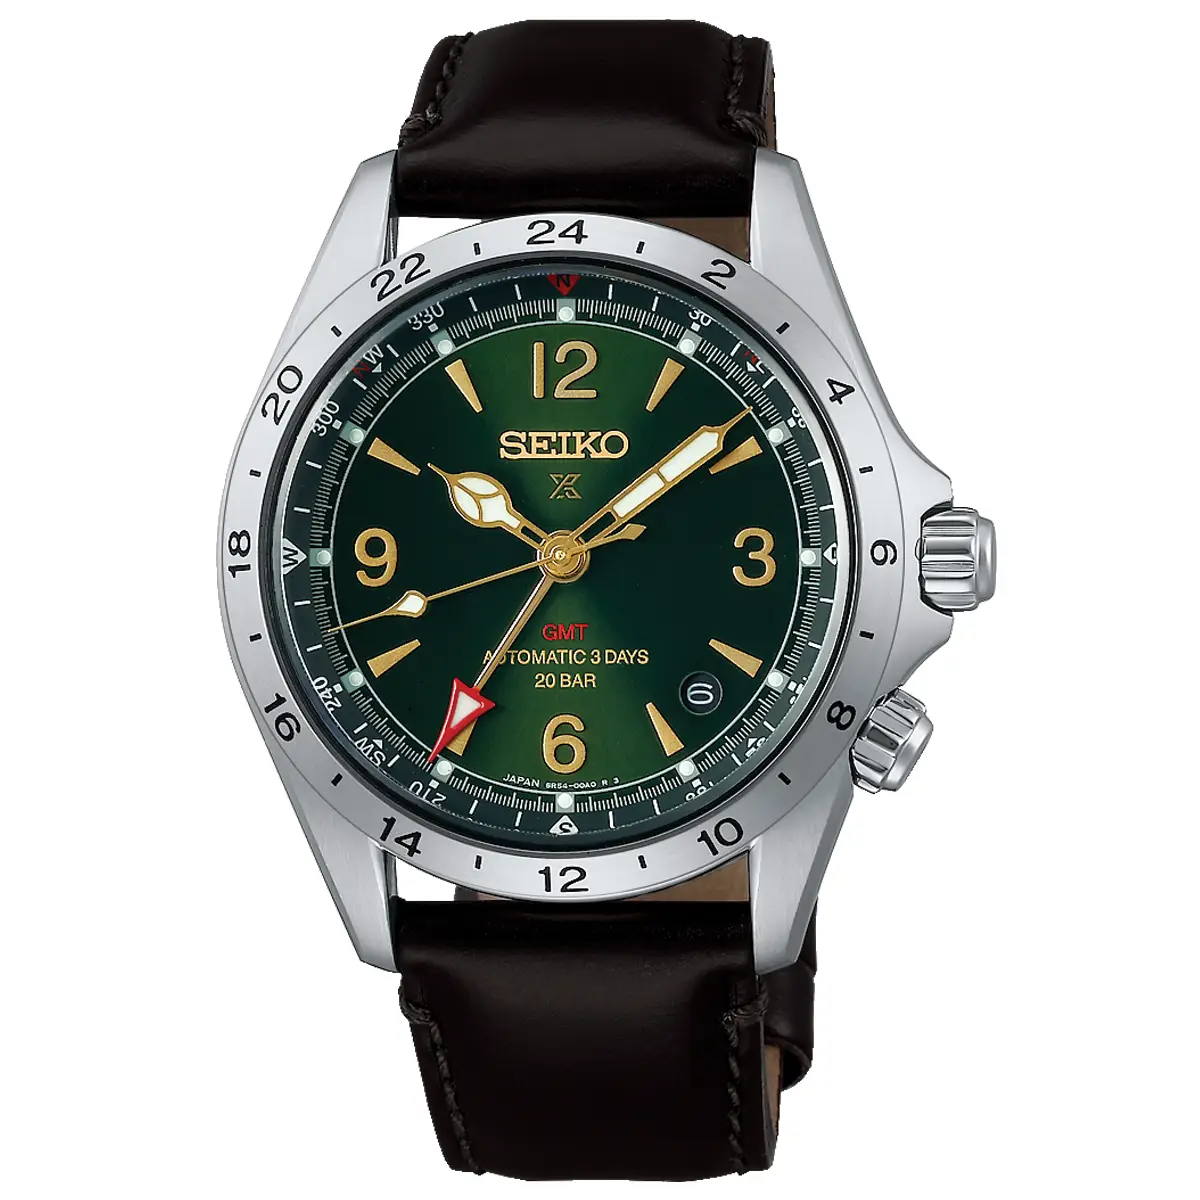 Đồng hồ Seiko Prospex Alpinist GMT SBEJ005 mặt số màu xanh. Dây đeo bằng da. Thân vỏ bằng thép.